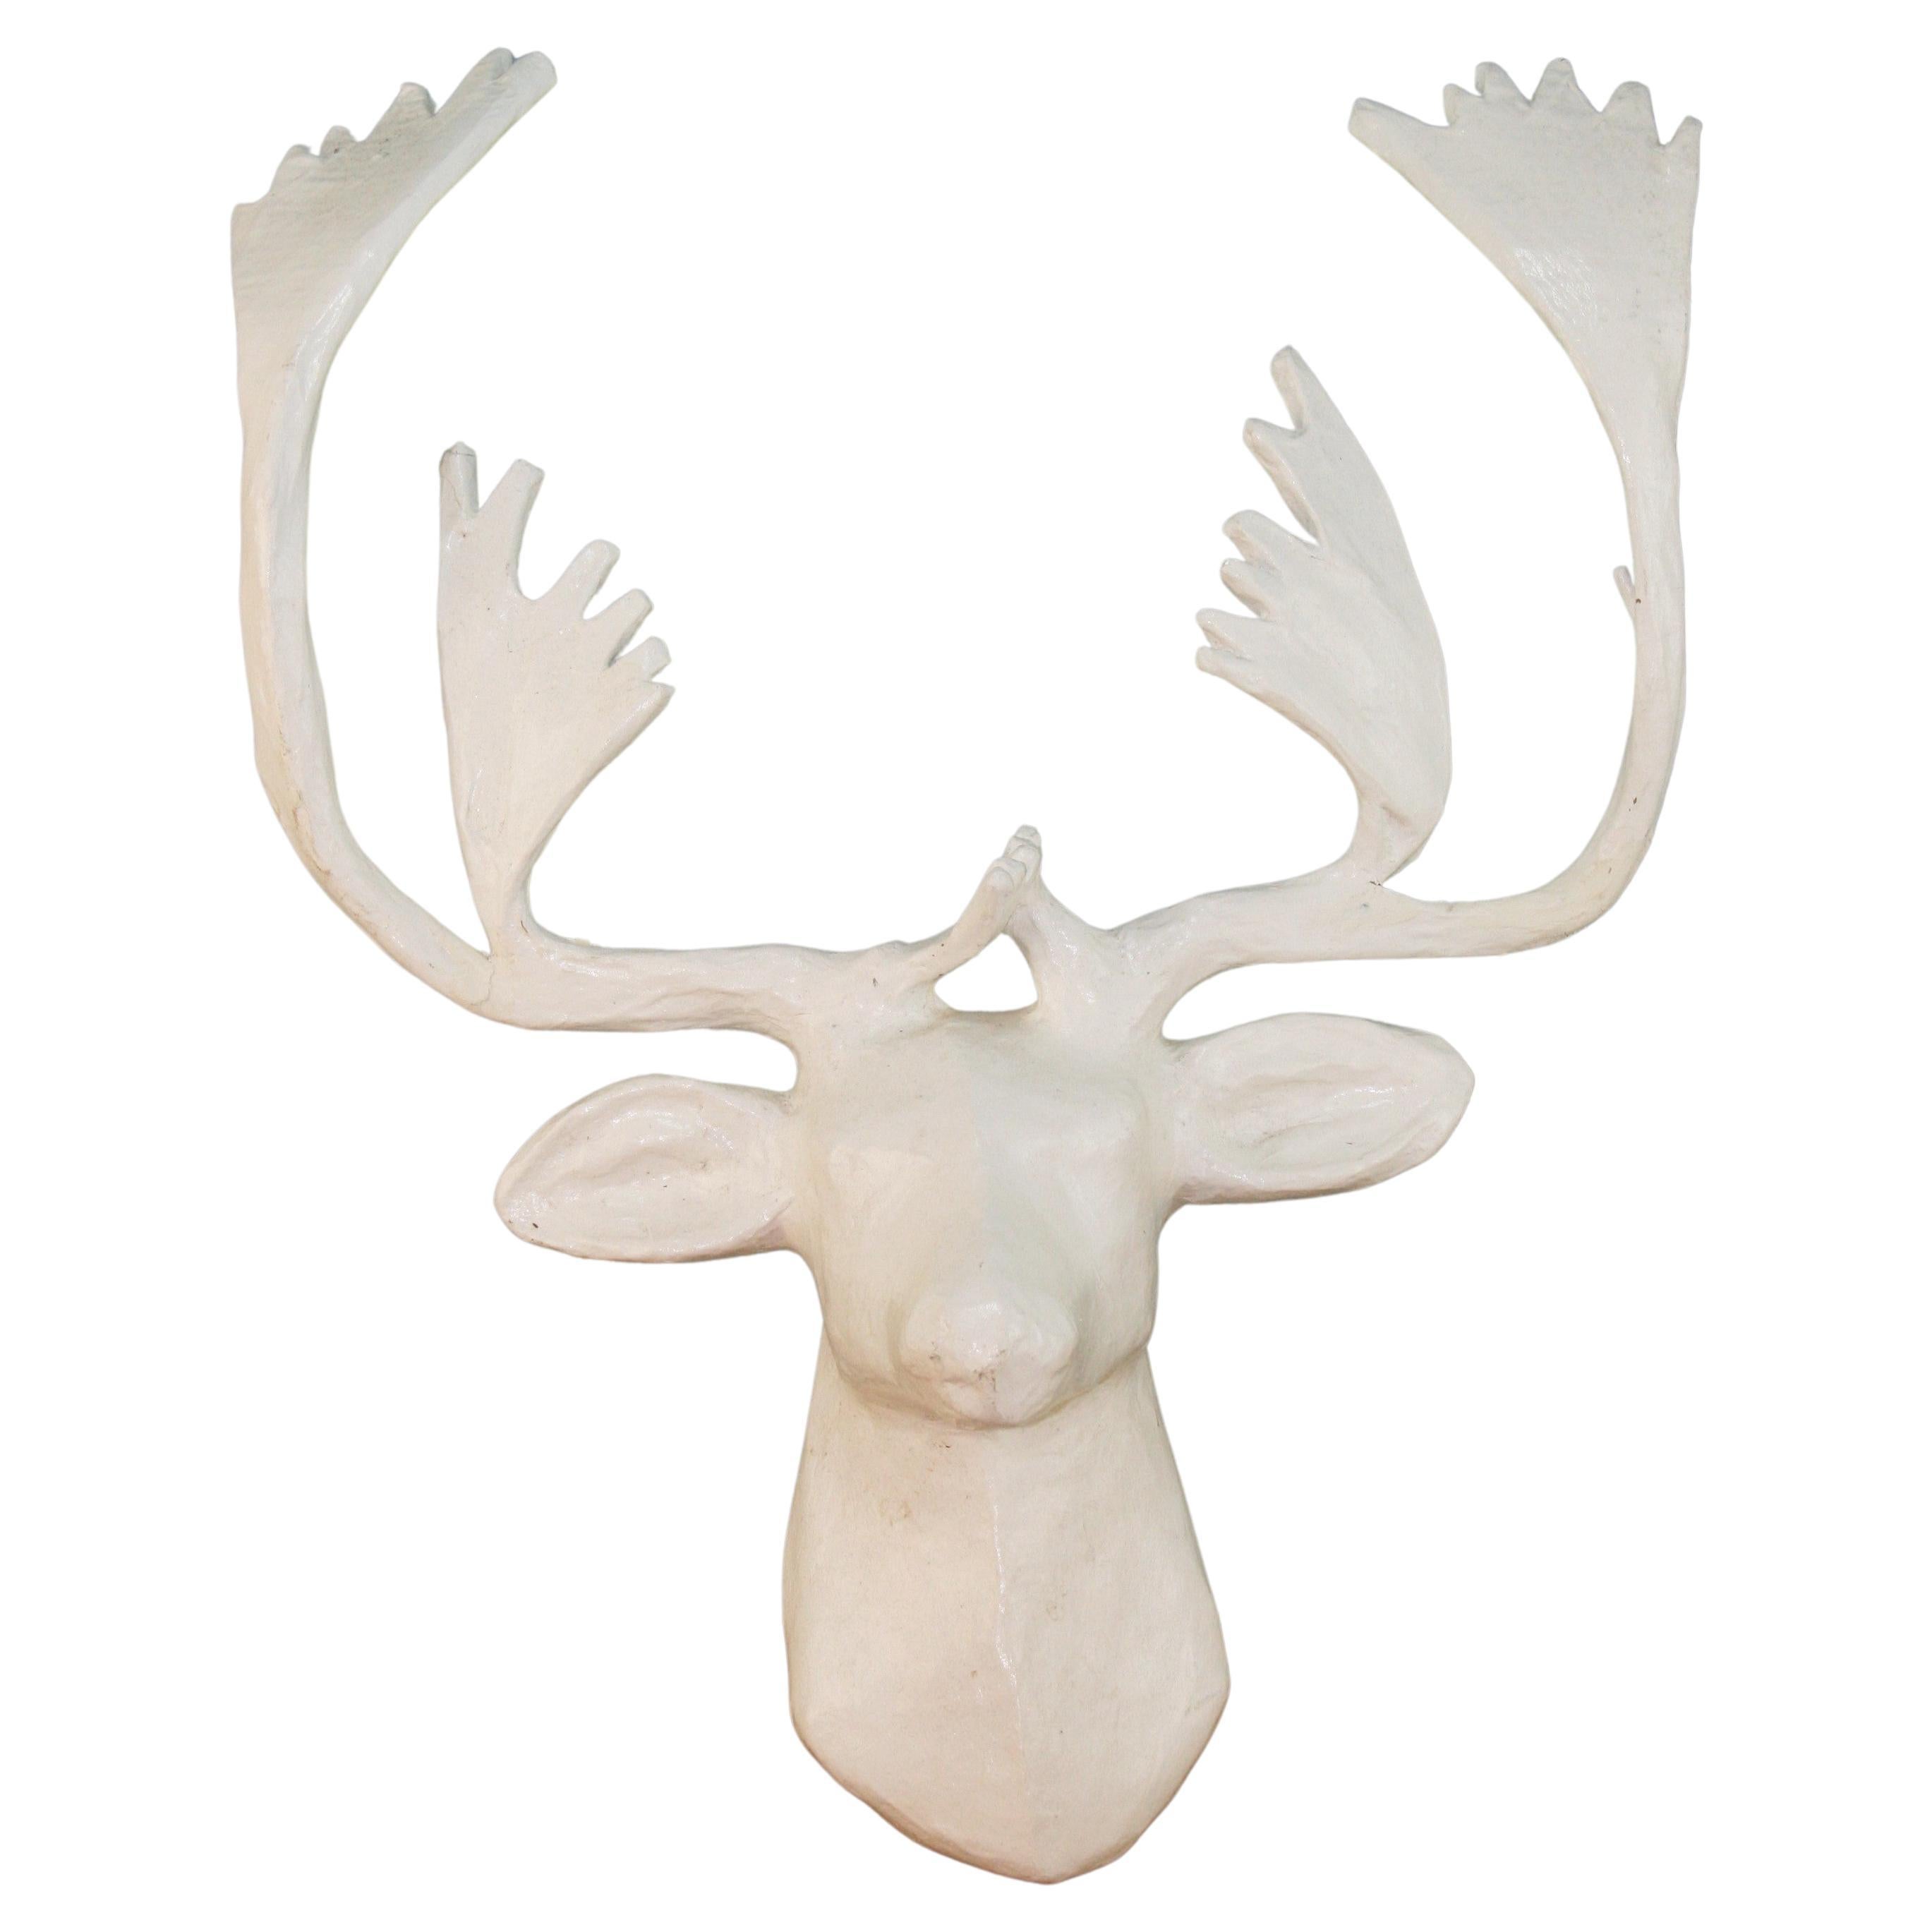 Paper Mache Deer Sculpture For Sale